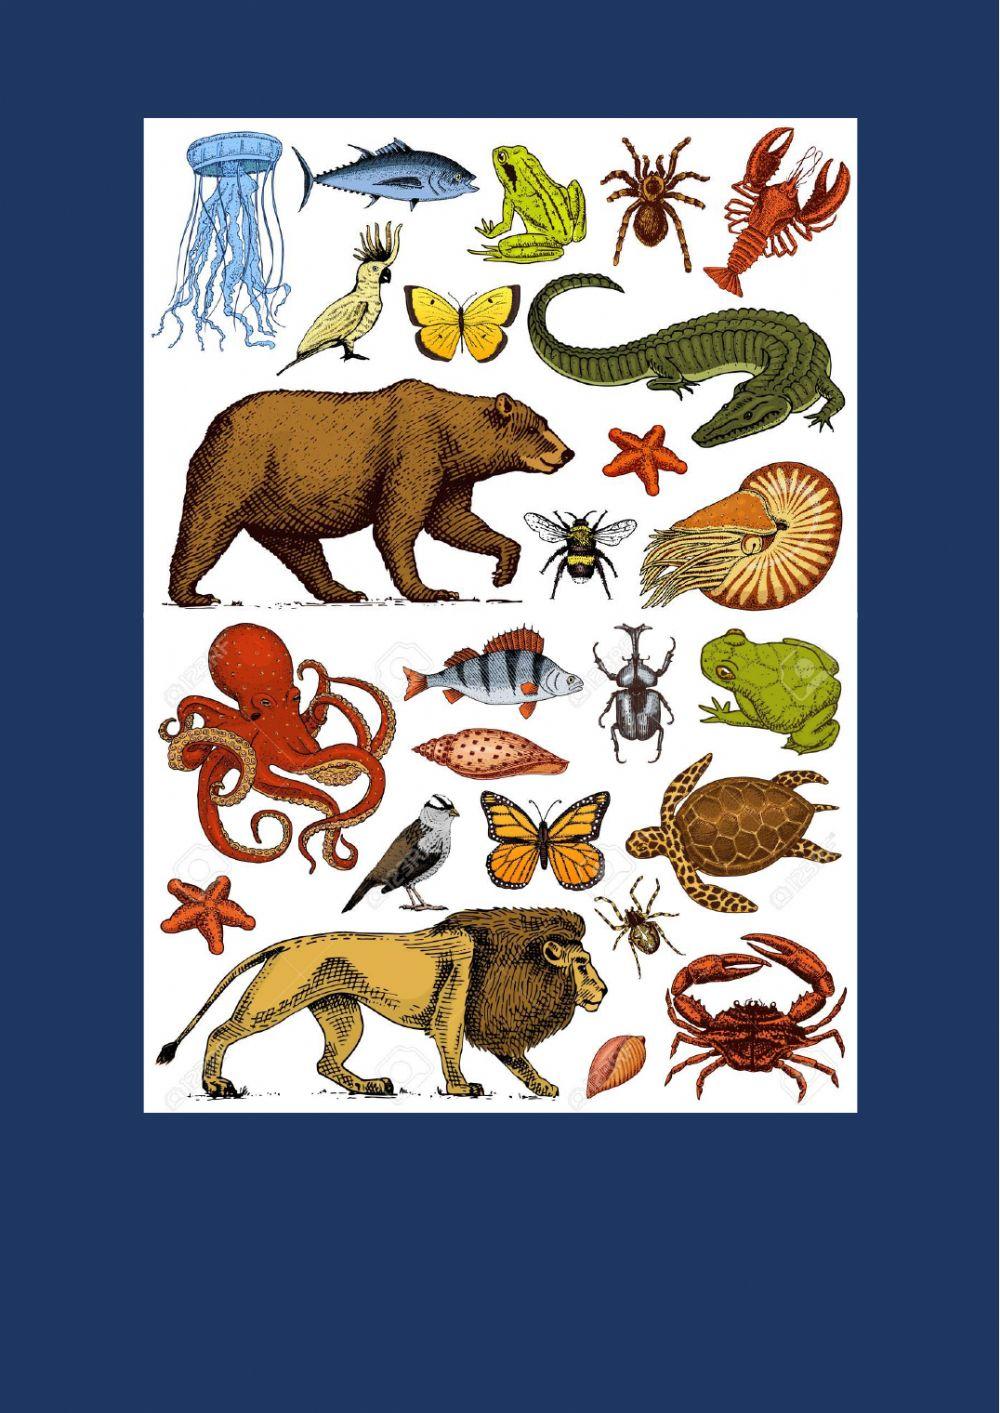 Mammals, amphibians, birds, fish, and reptiles.